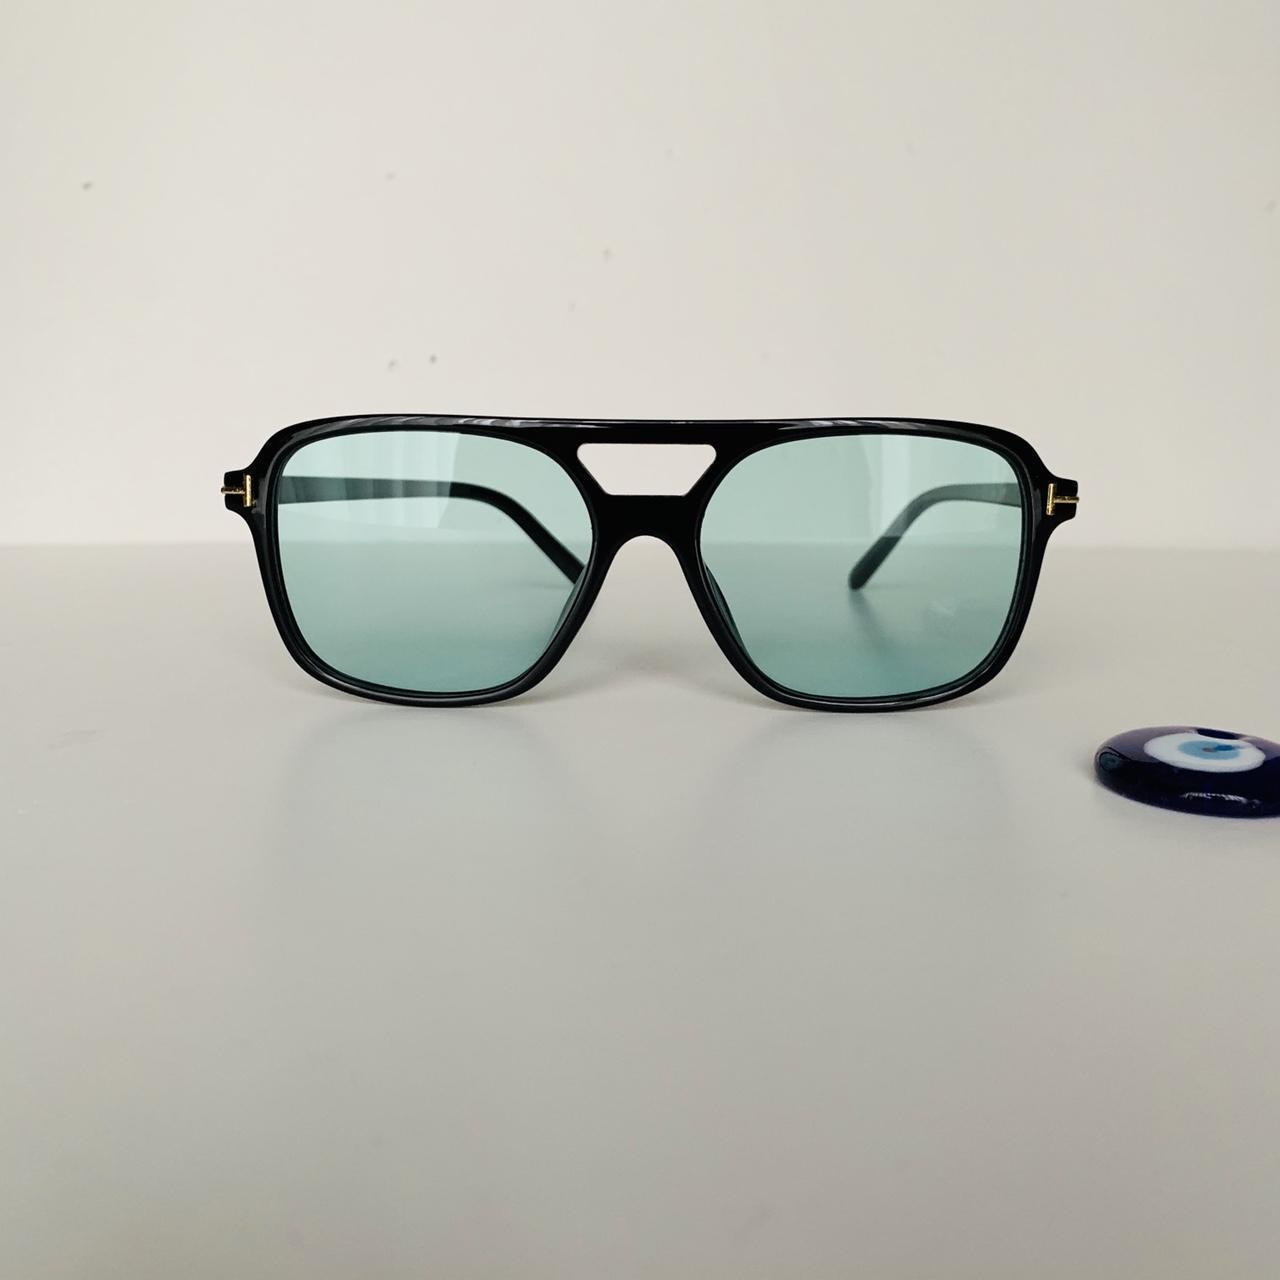 Black Oversize framSunglasses green lenses Free... - Depop